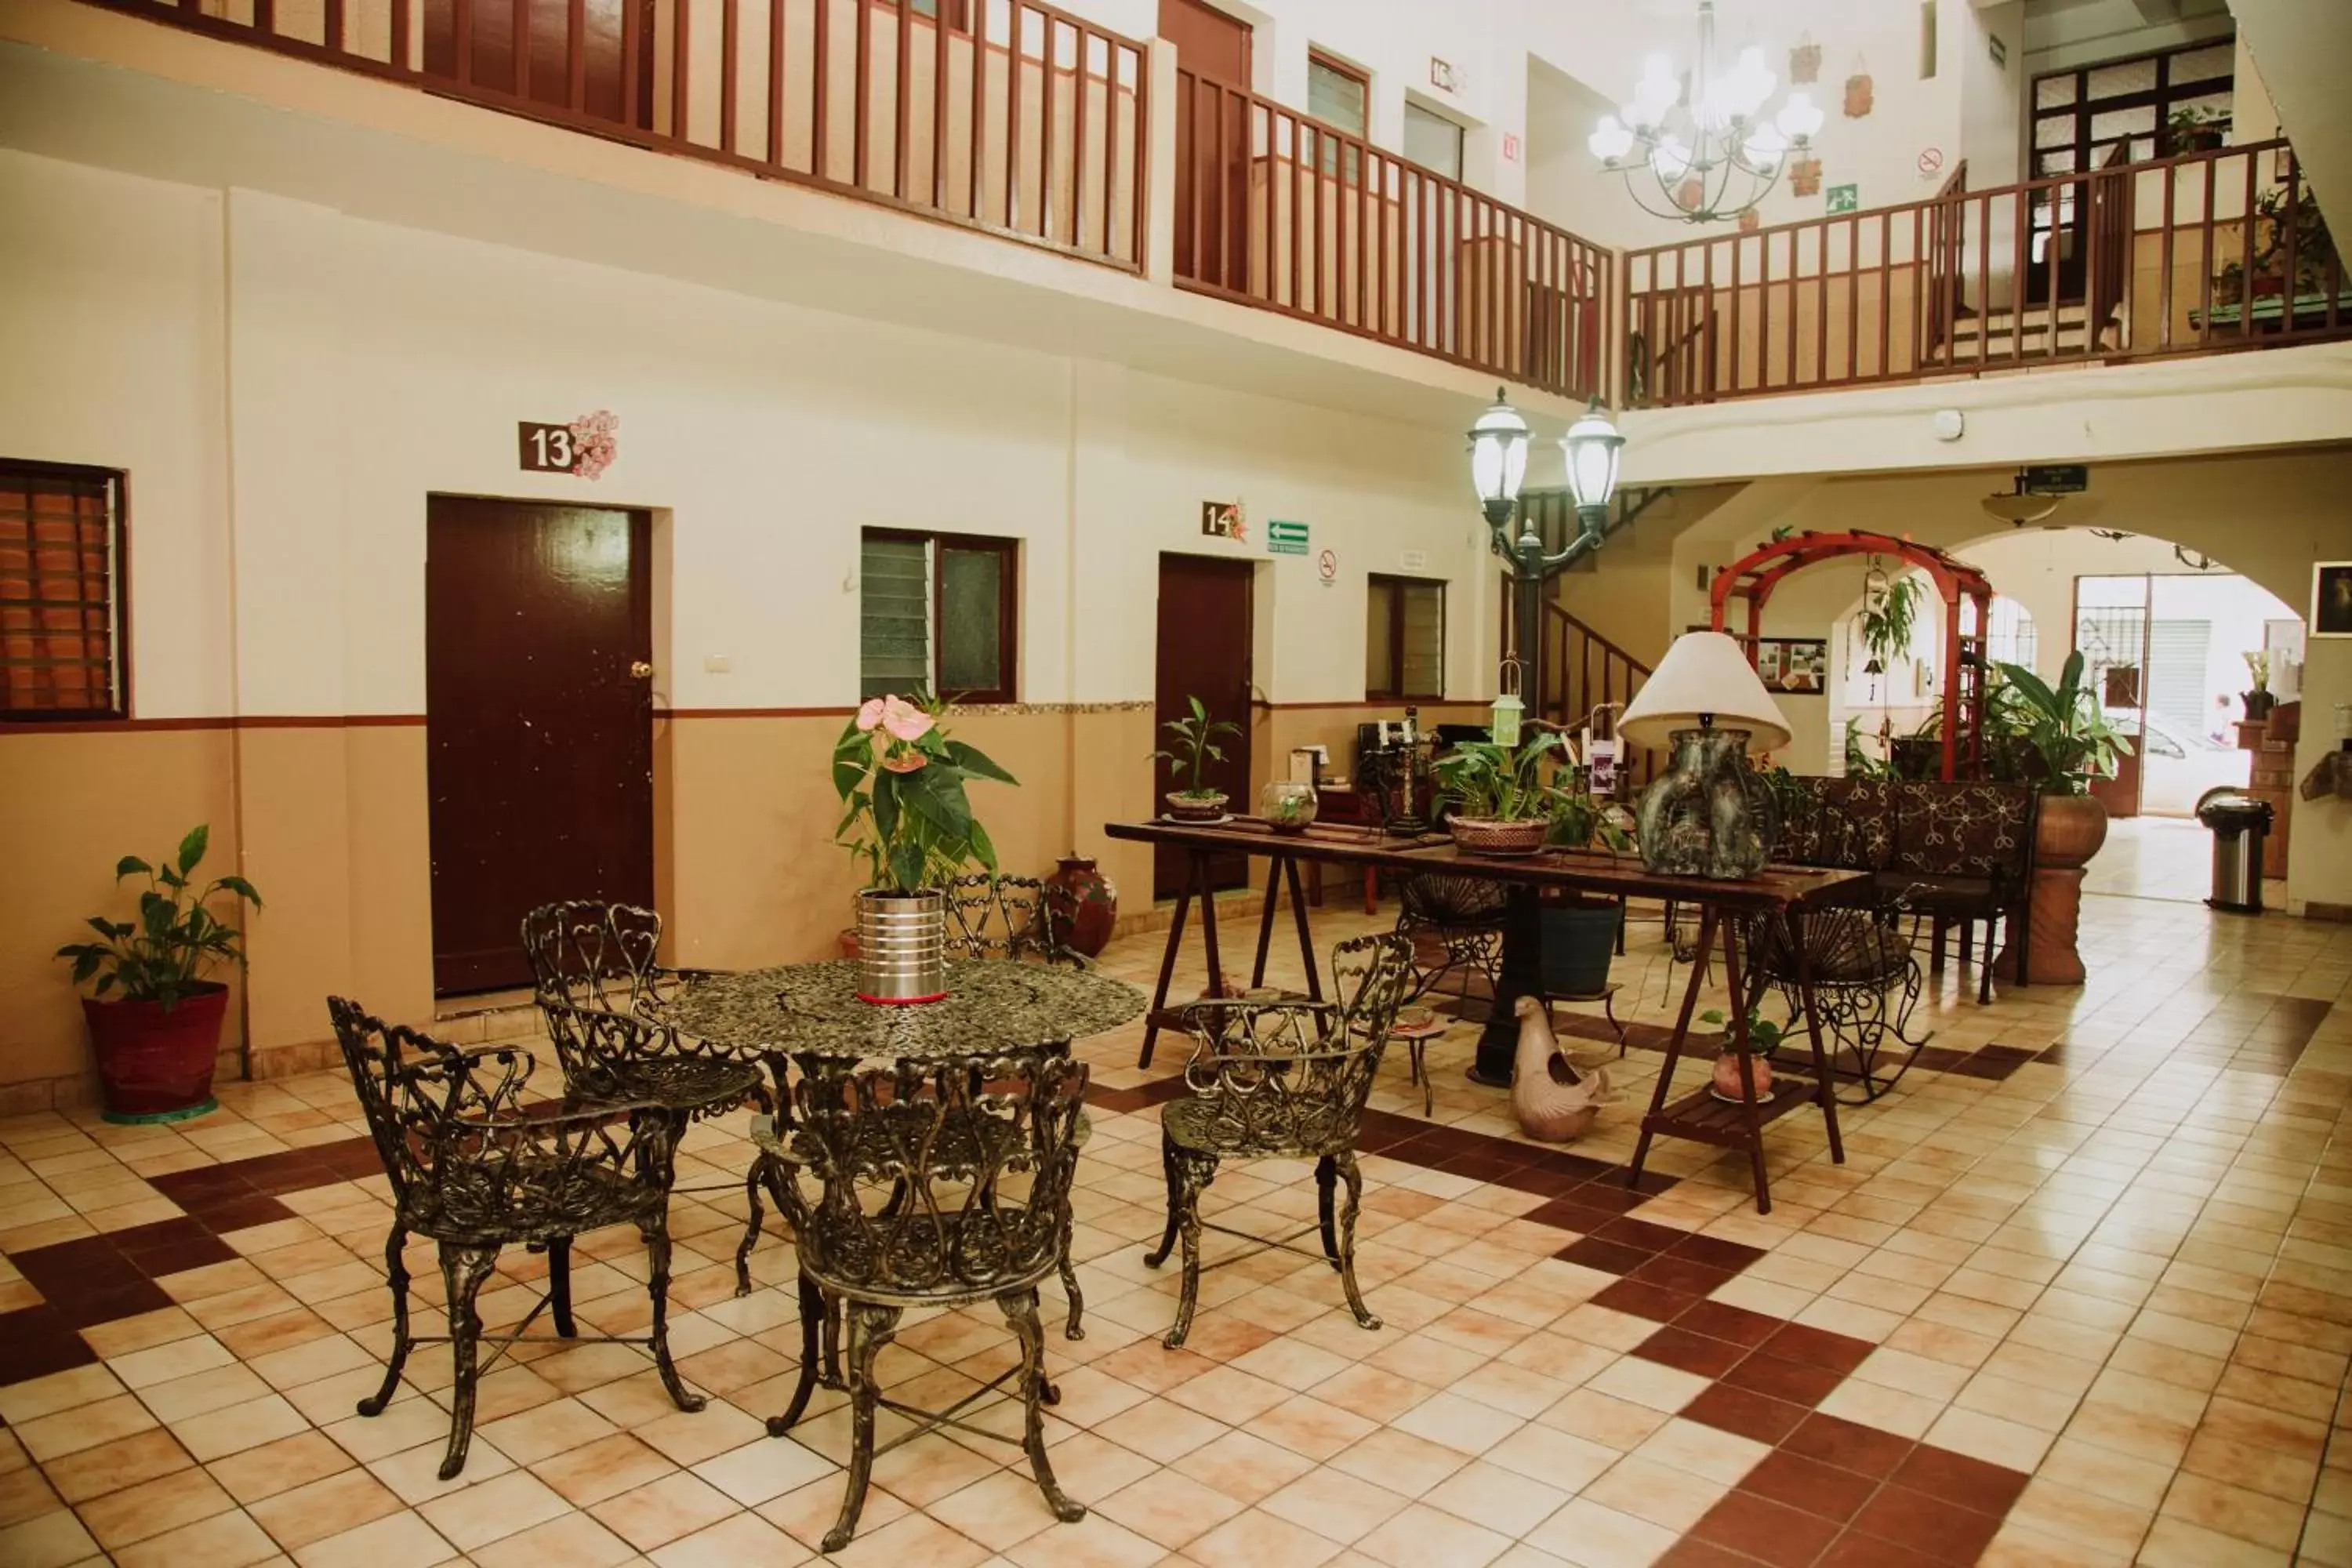 Area and facilities in Hotel Cervantino